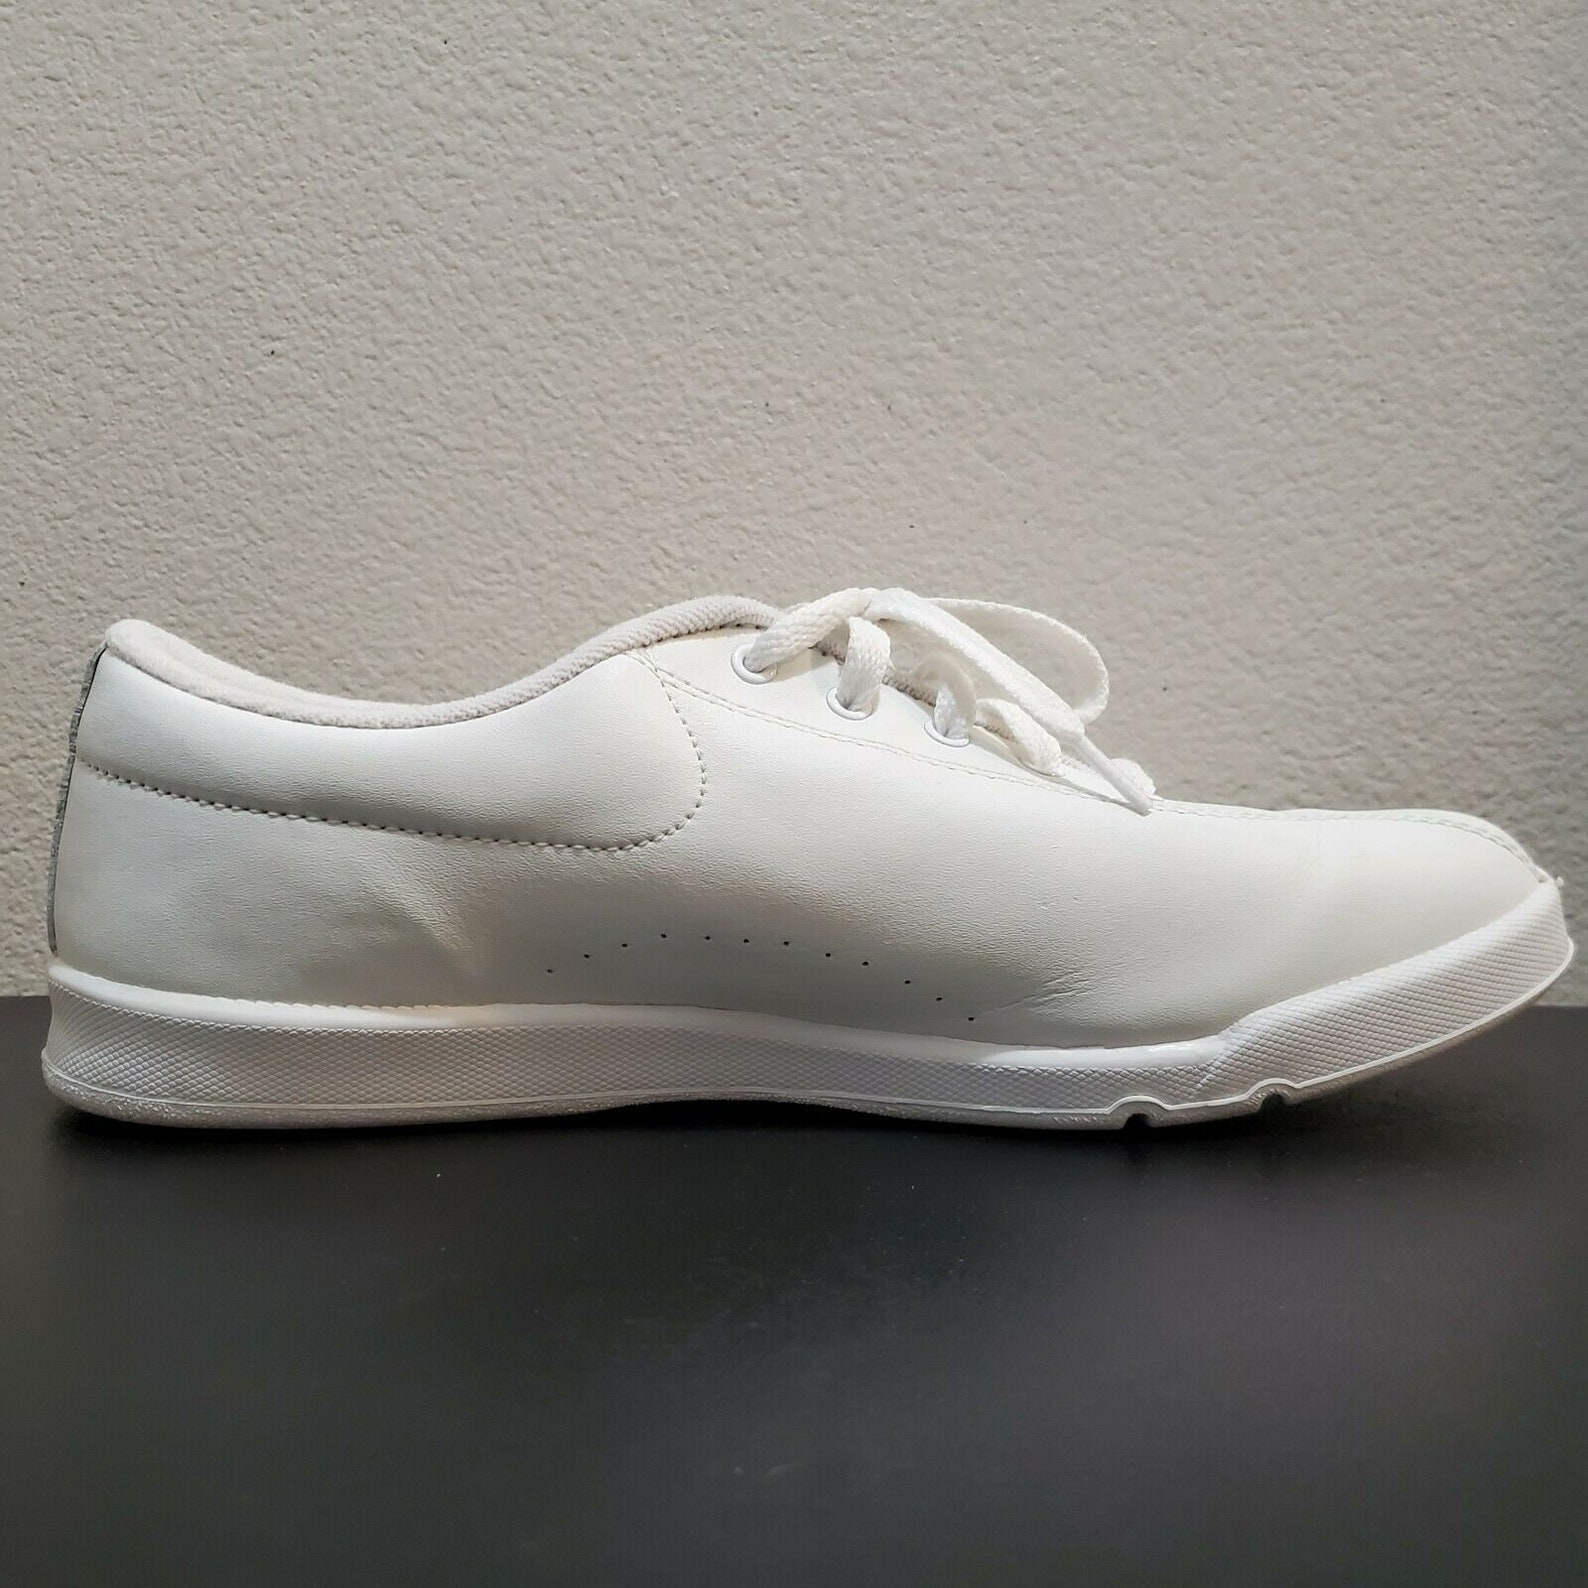 Vintage 1995 LA Gear Women's White Low Top Comfort Shoes | Etsy